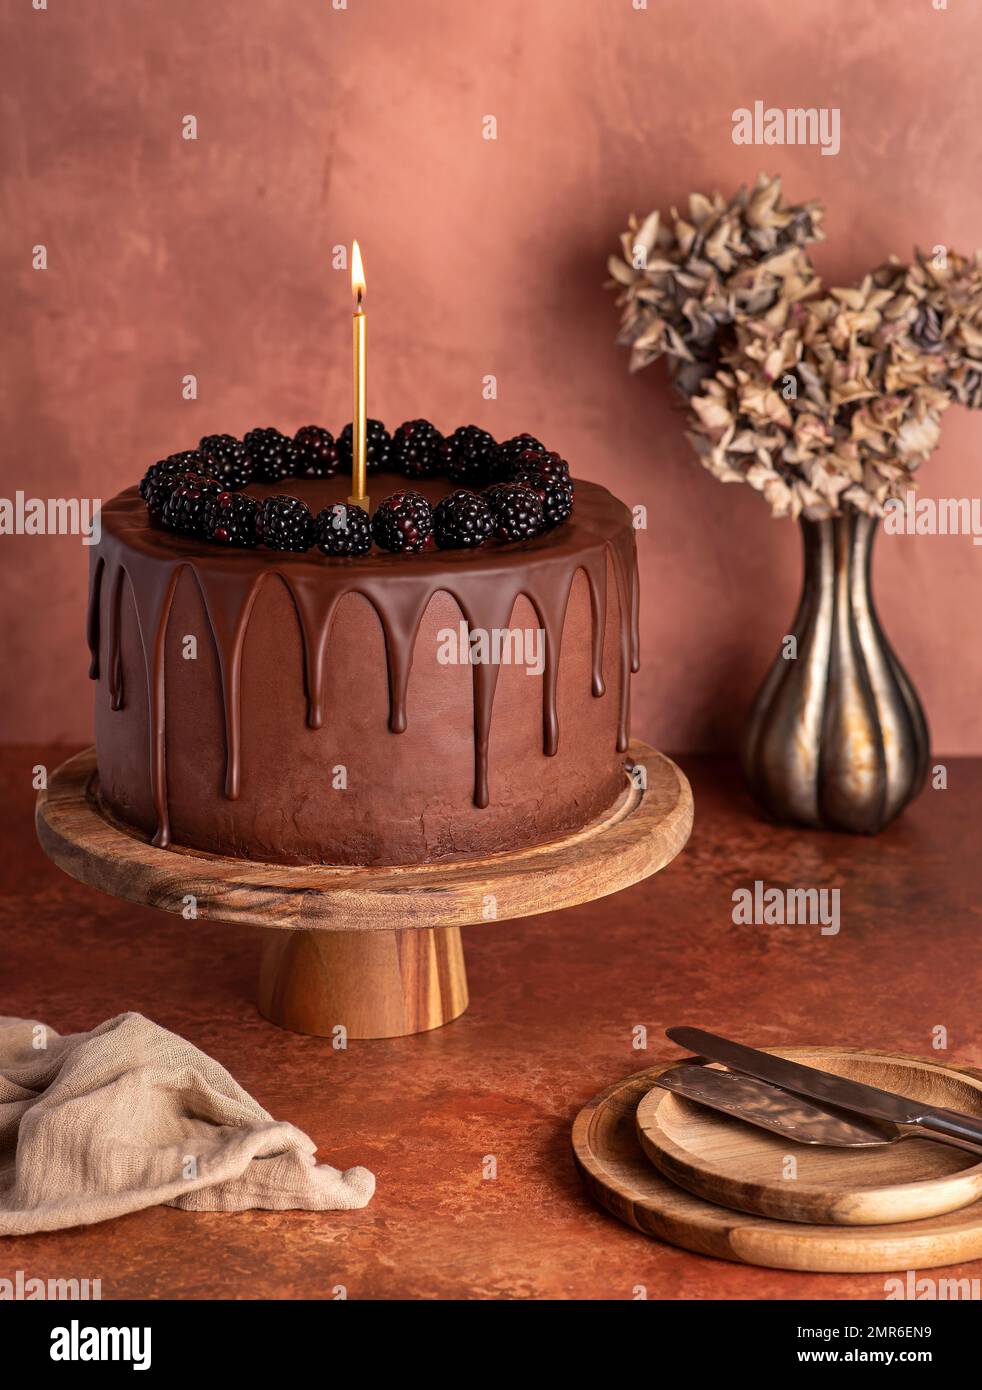 Fotografia alimentare di torta di cioccolato, more, crema, compleanno, decorazione, celebrazione, anniversario, festa Foto Stock